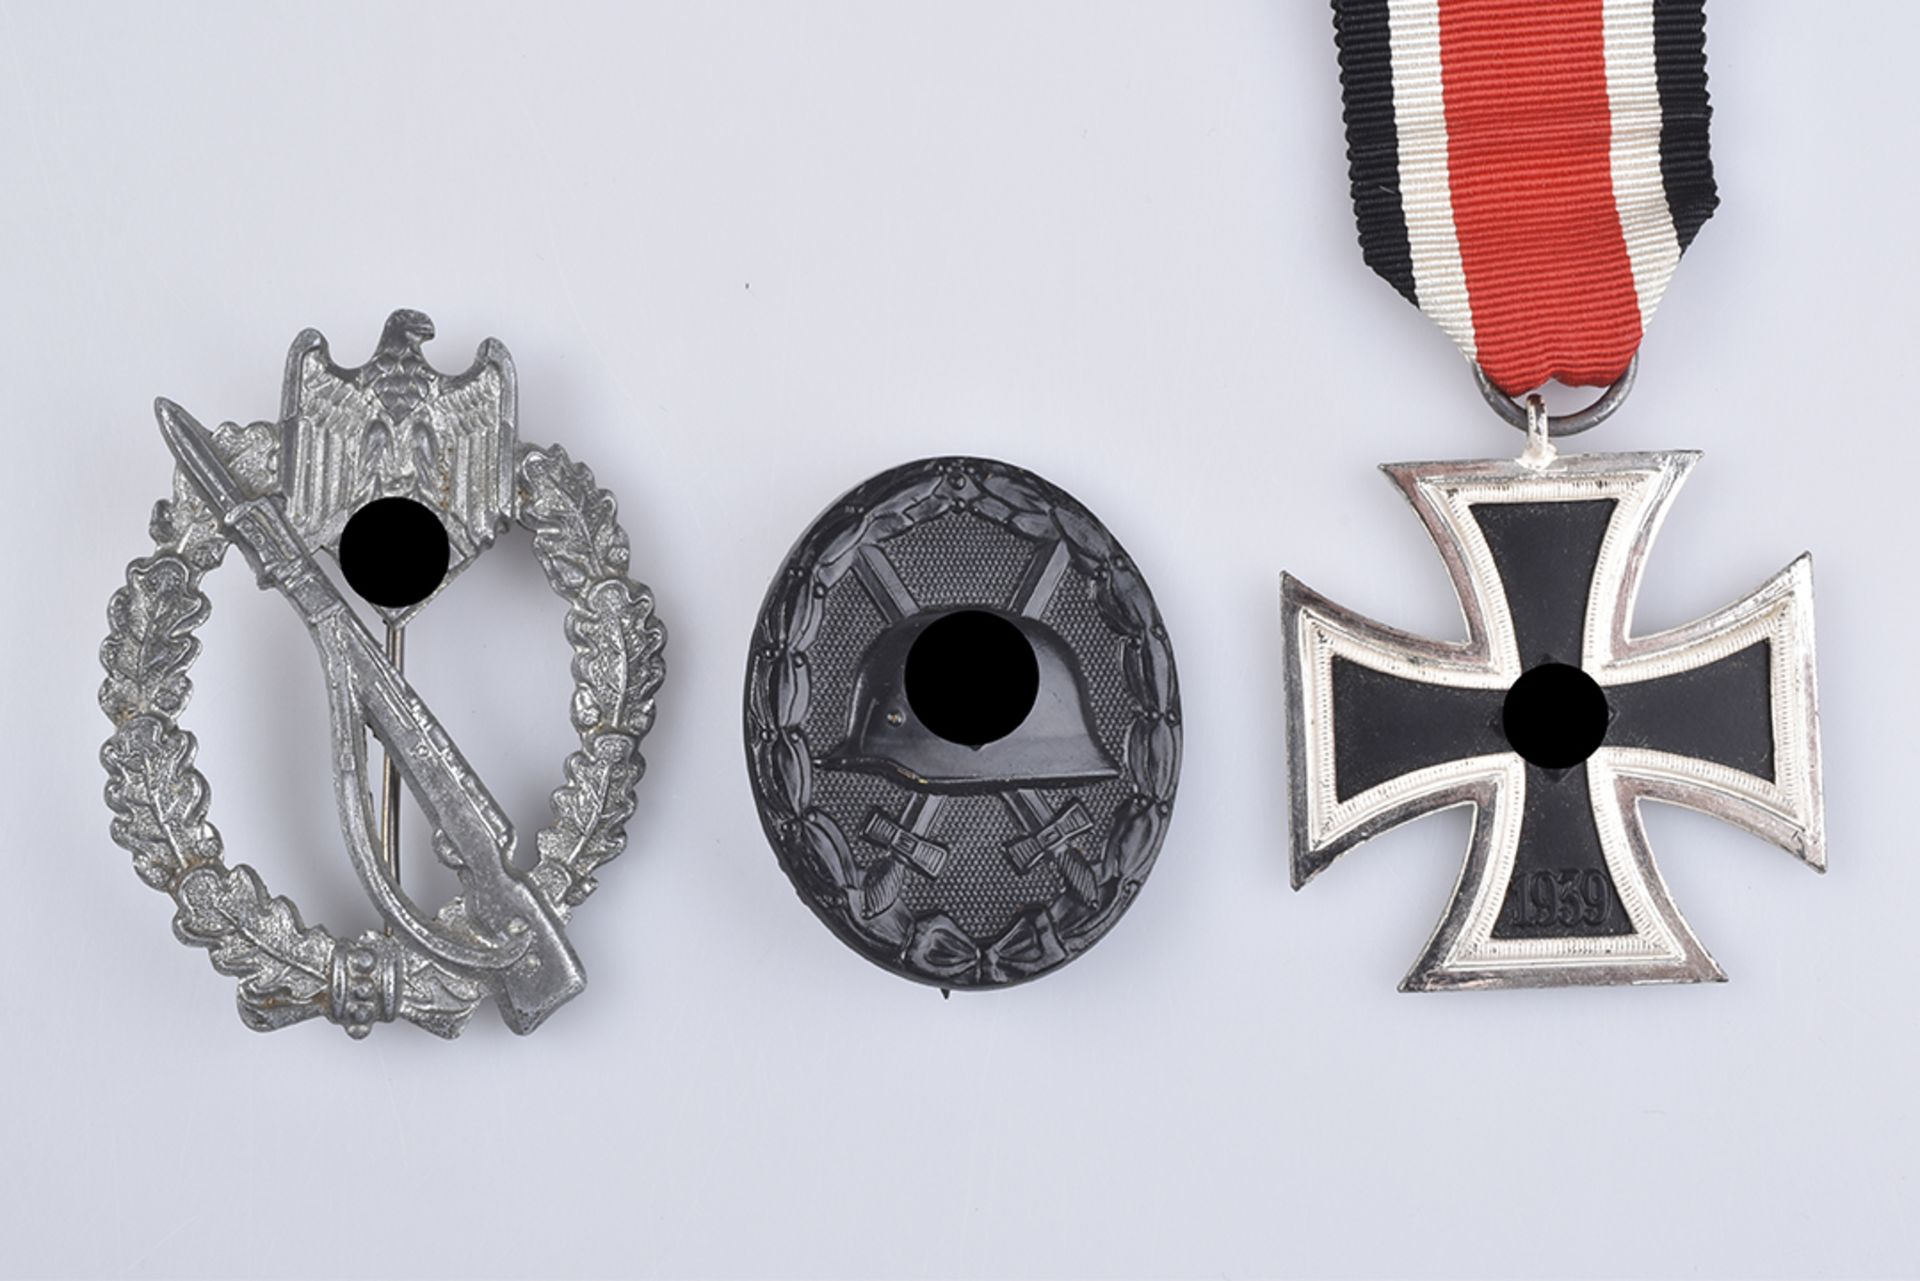 WK II EK II, ISAF, VWA Schwarz und Silber mit dazugehörigen Urkunden - Image 2 of 3